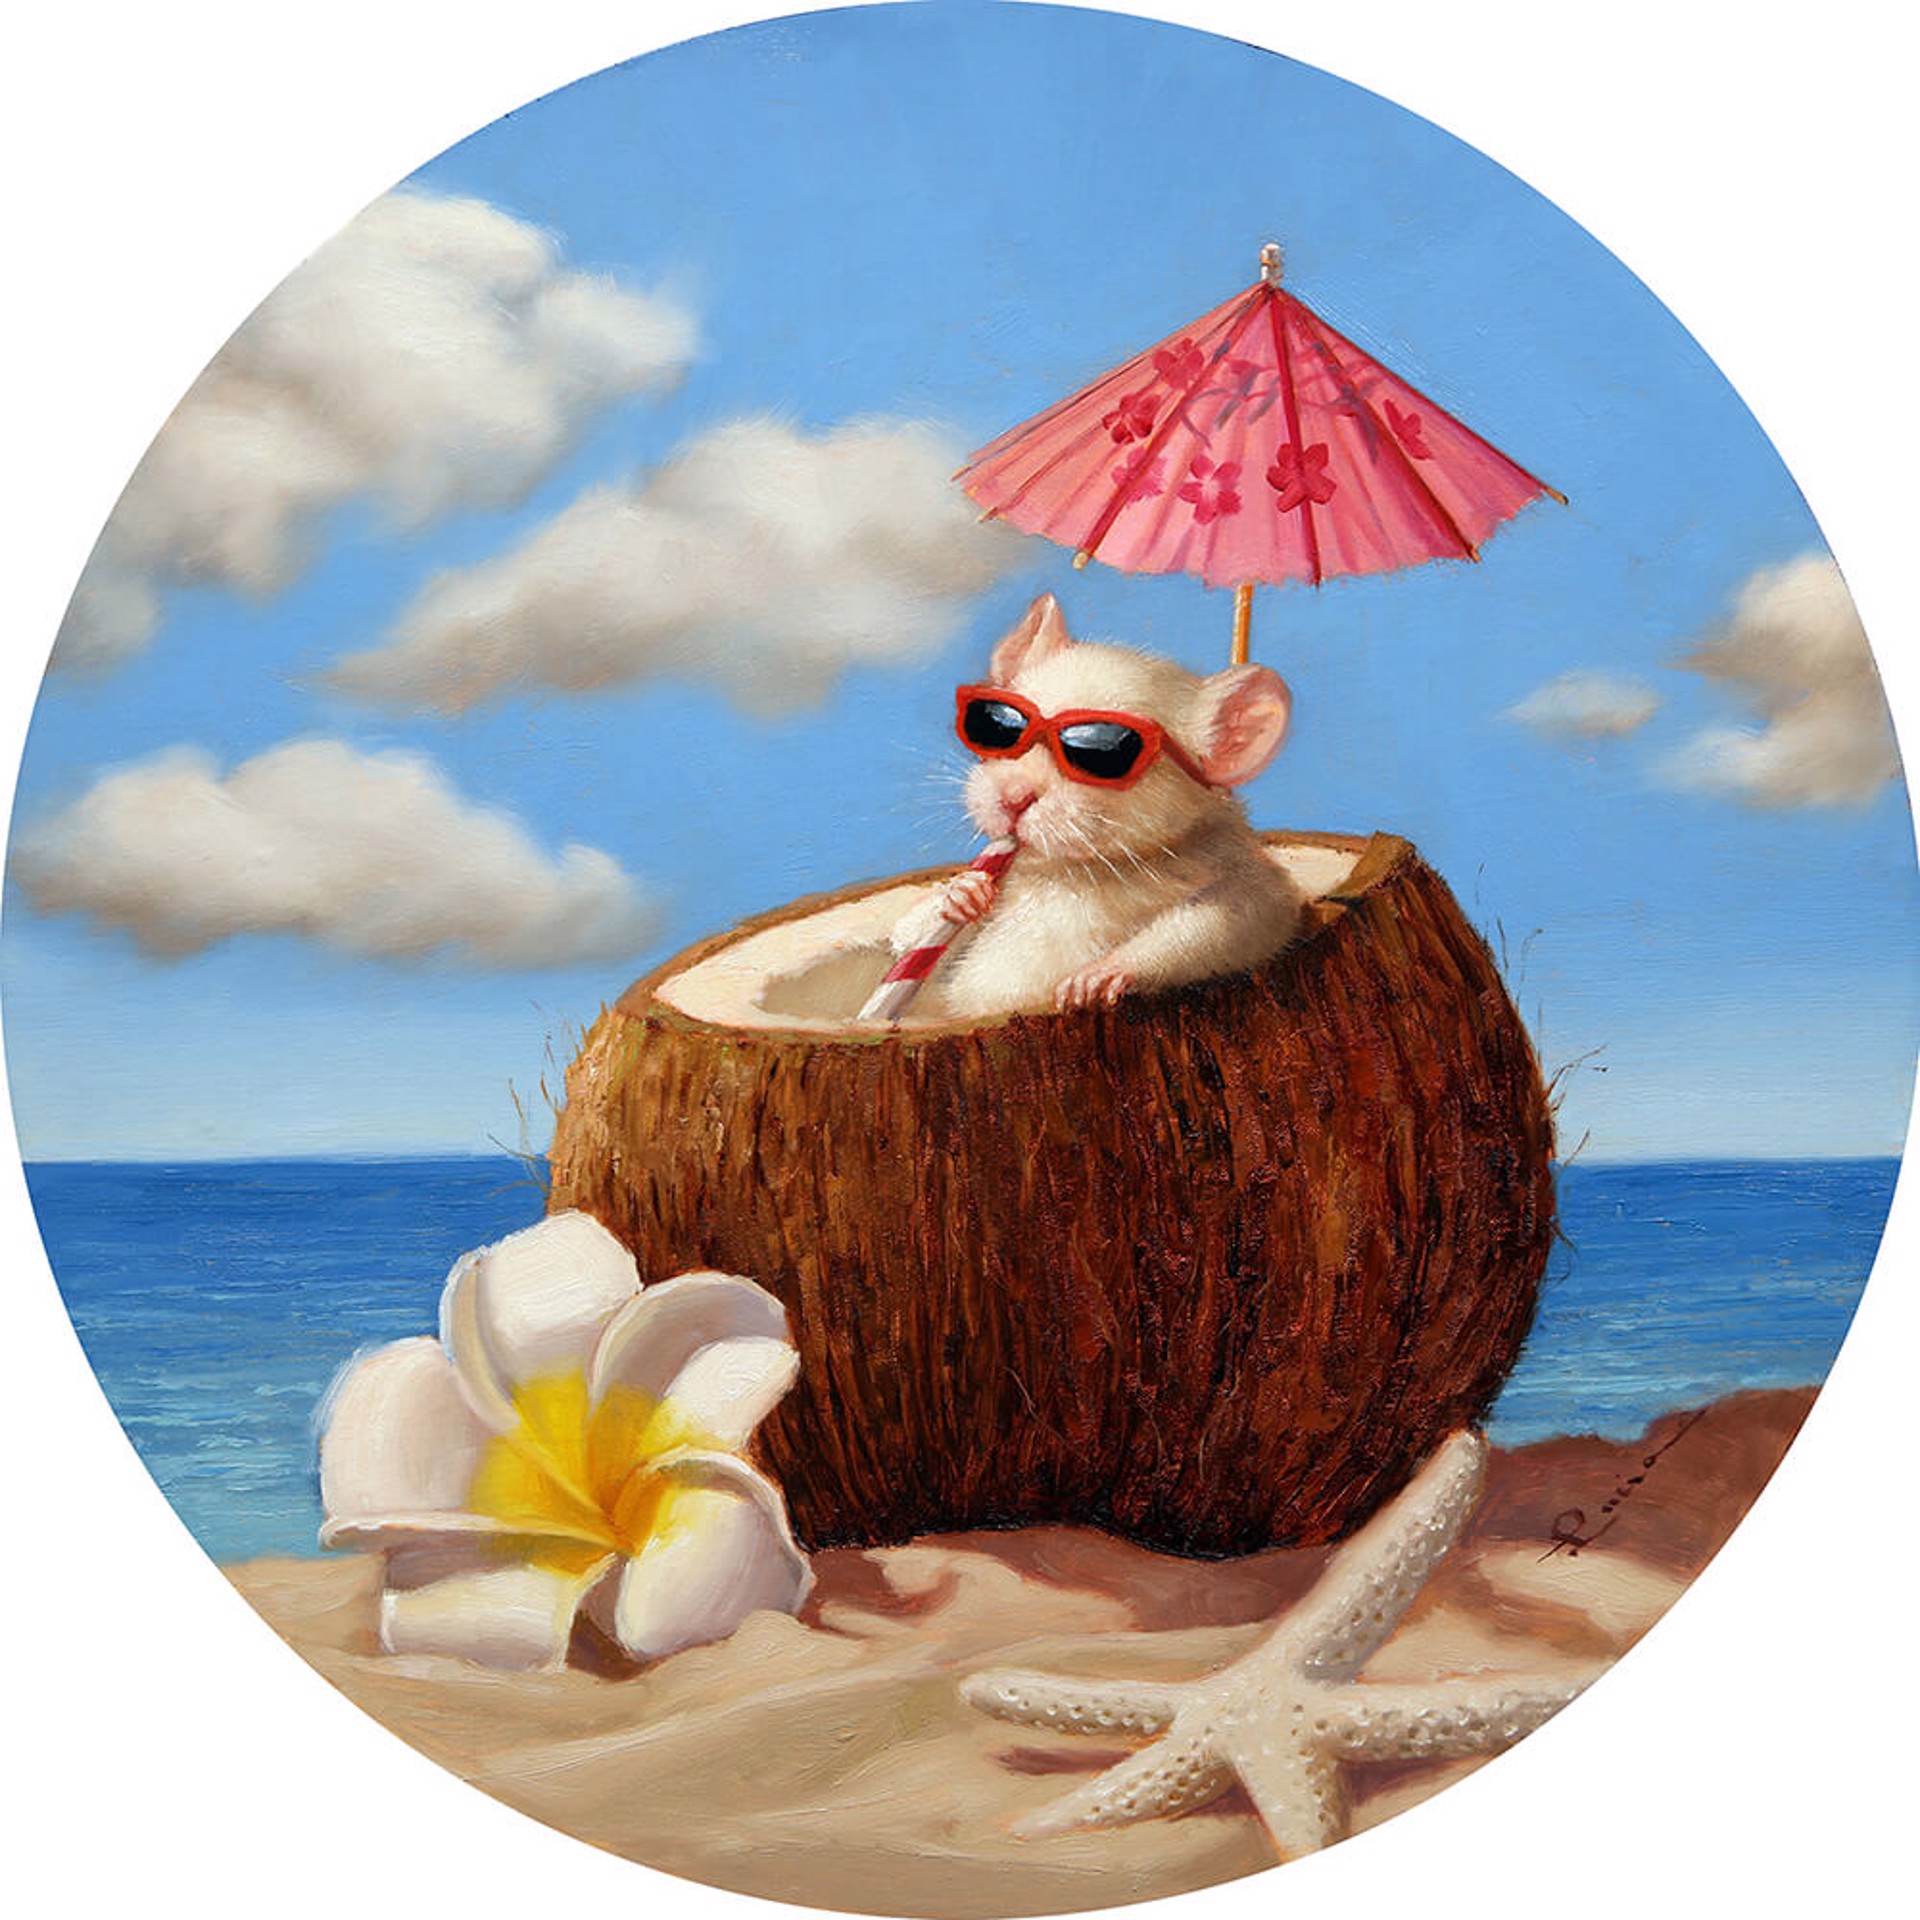 Seaside Lounge by Lucia Heffernan